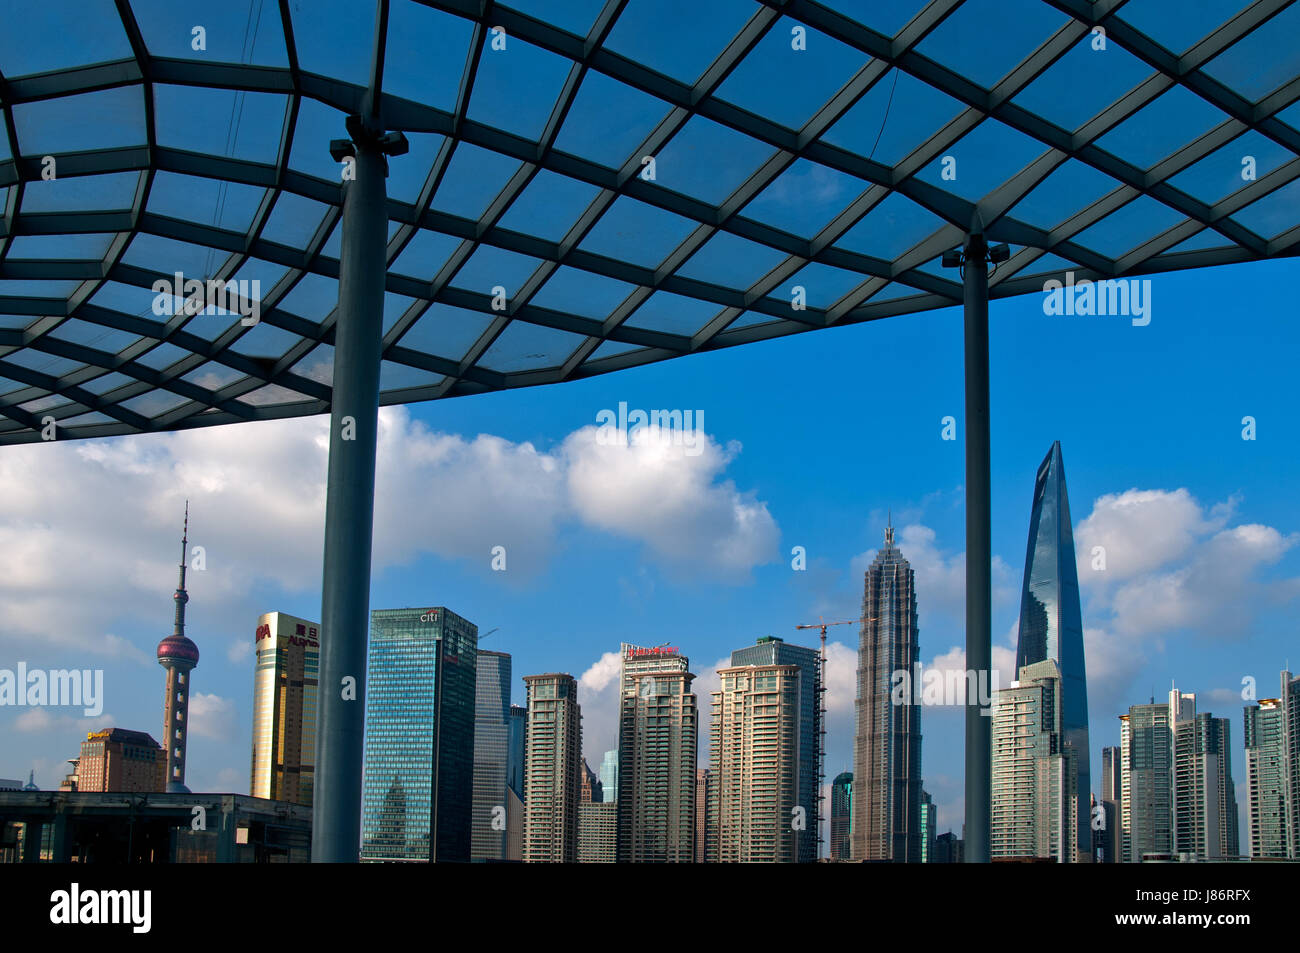 blaue Asien Baustil des architektonischen Baustils Architektur Stockfoto